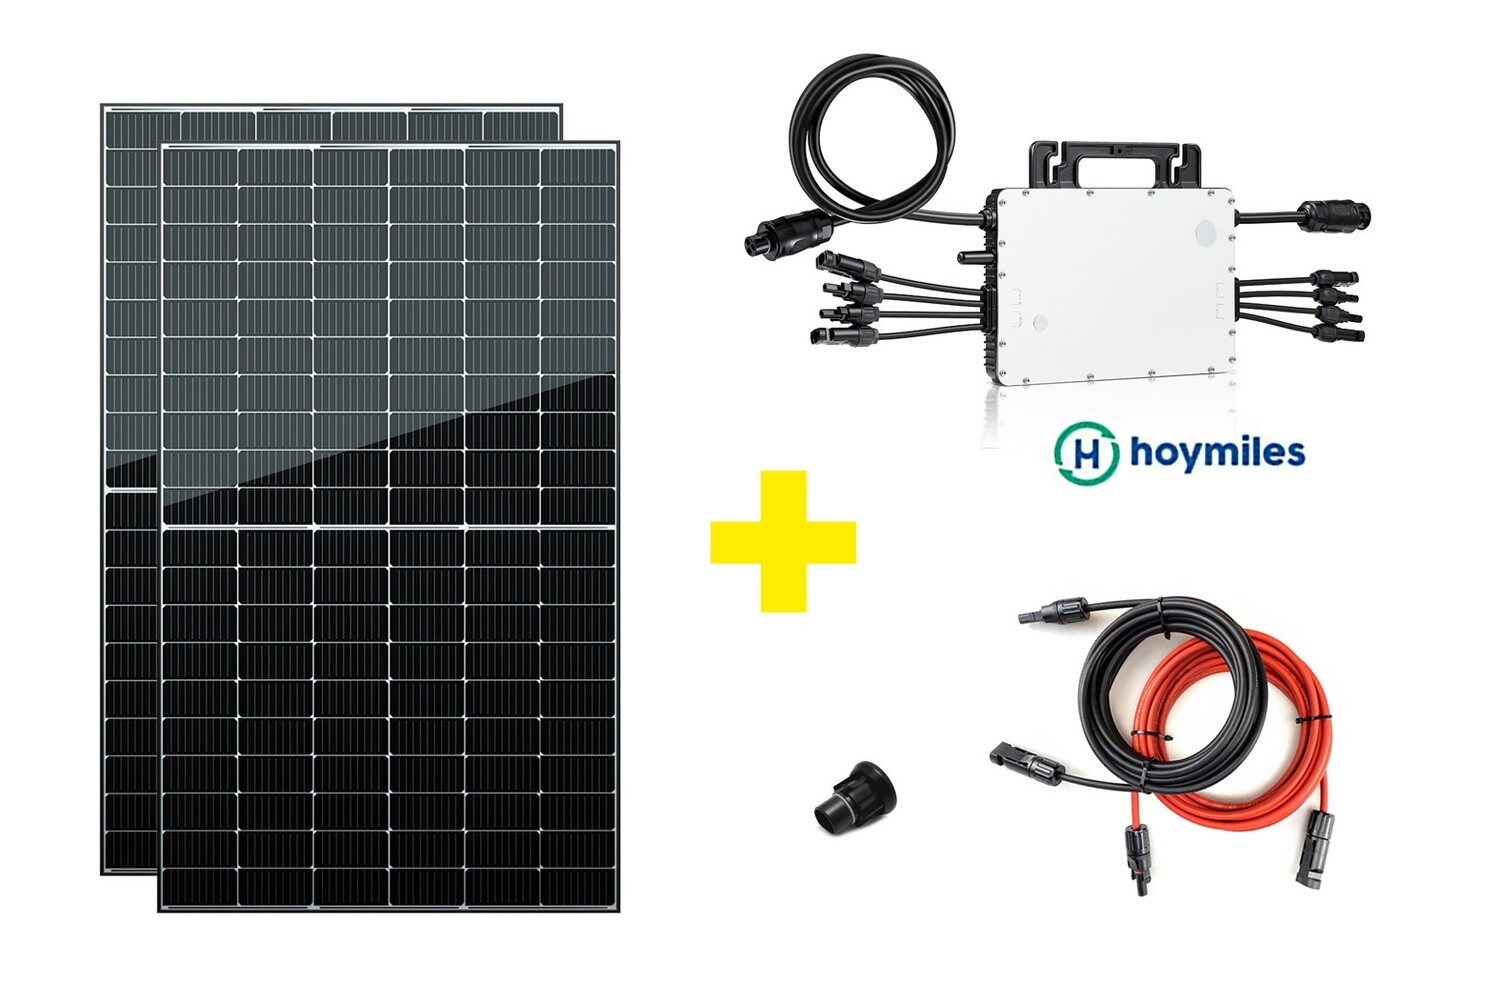 Bestseller Mini PV Anlage 1500 Watt - mit 2 Solarmodulen 760 Wp - nach Vereinbarung abholbar oder Lieferung innerhalb von 18 Tagen